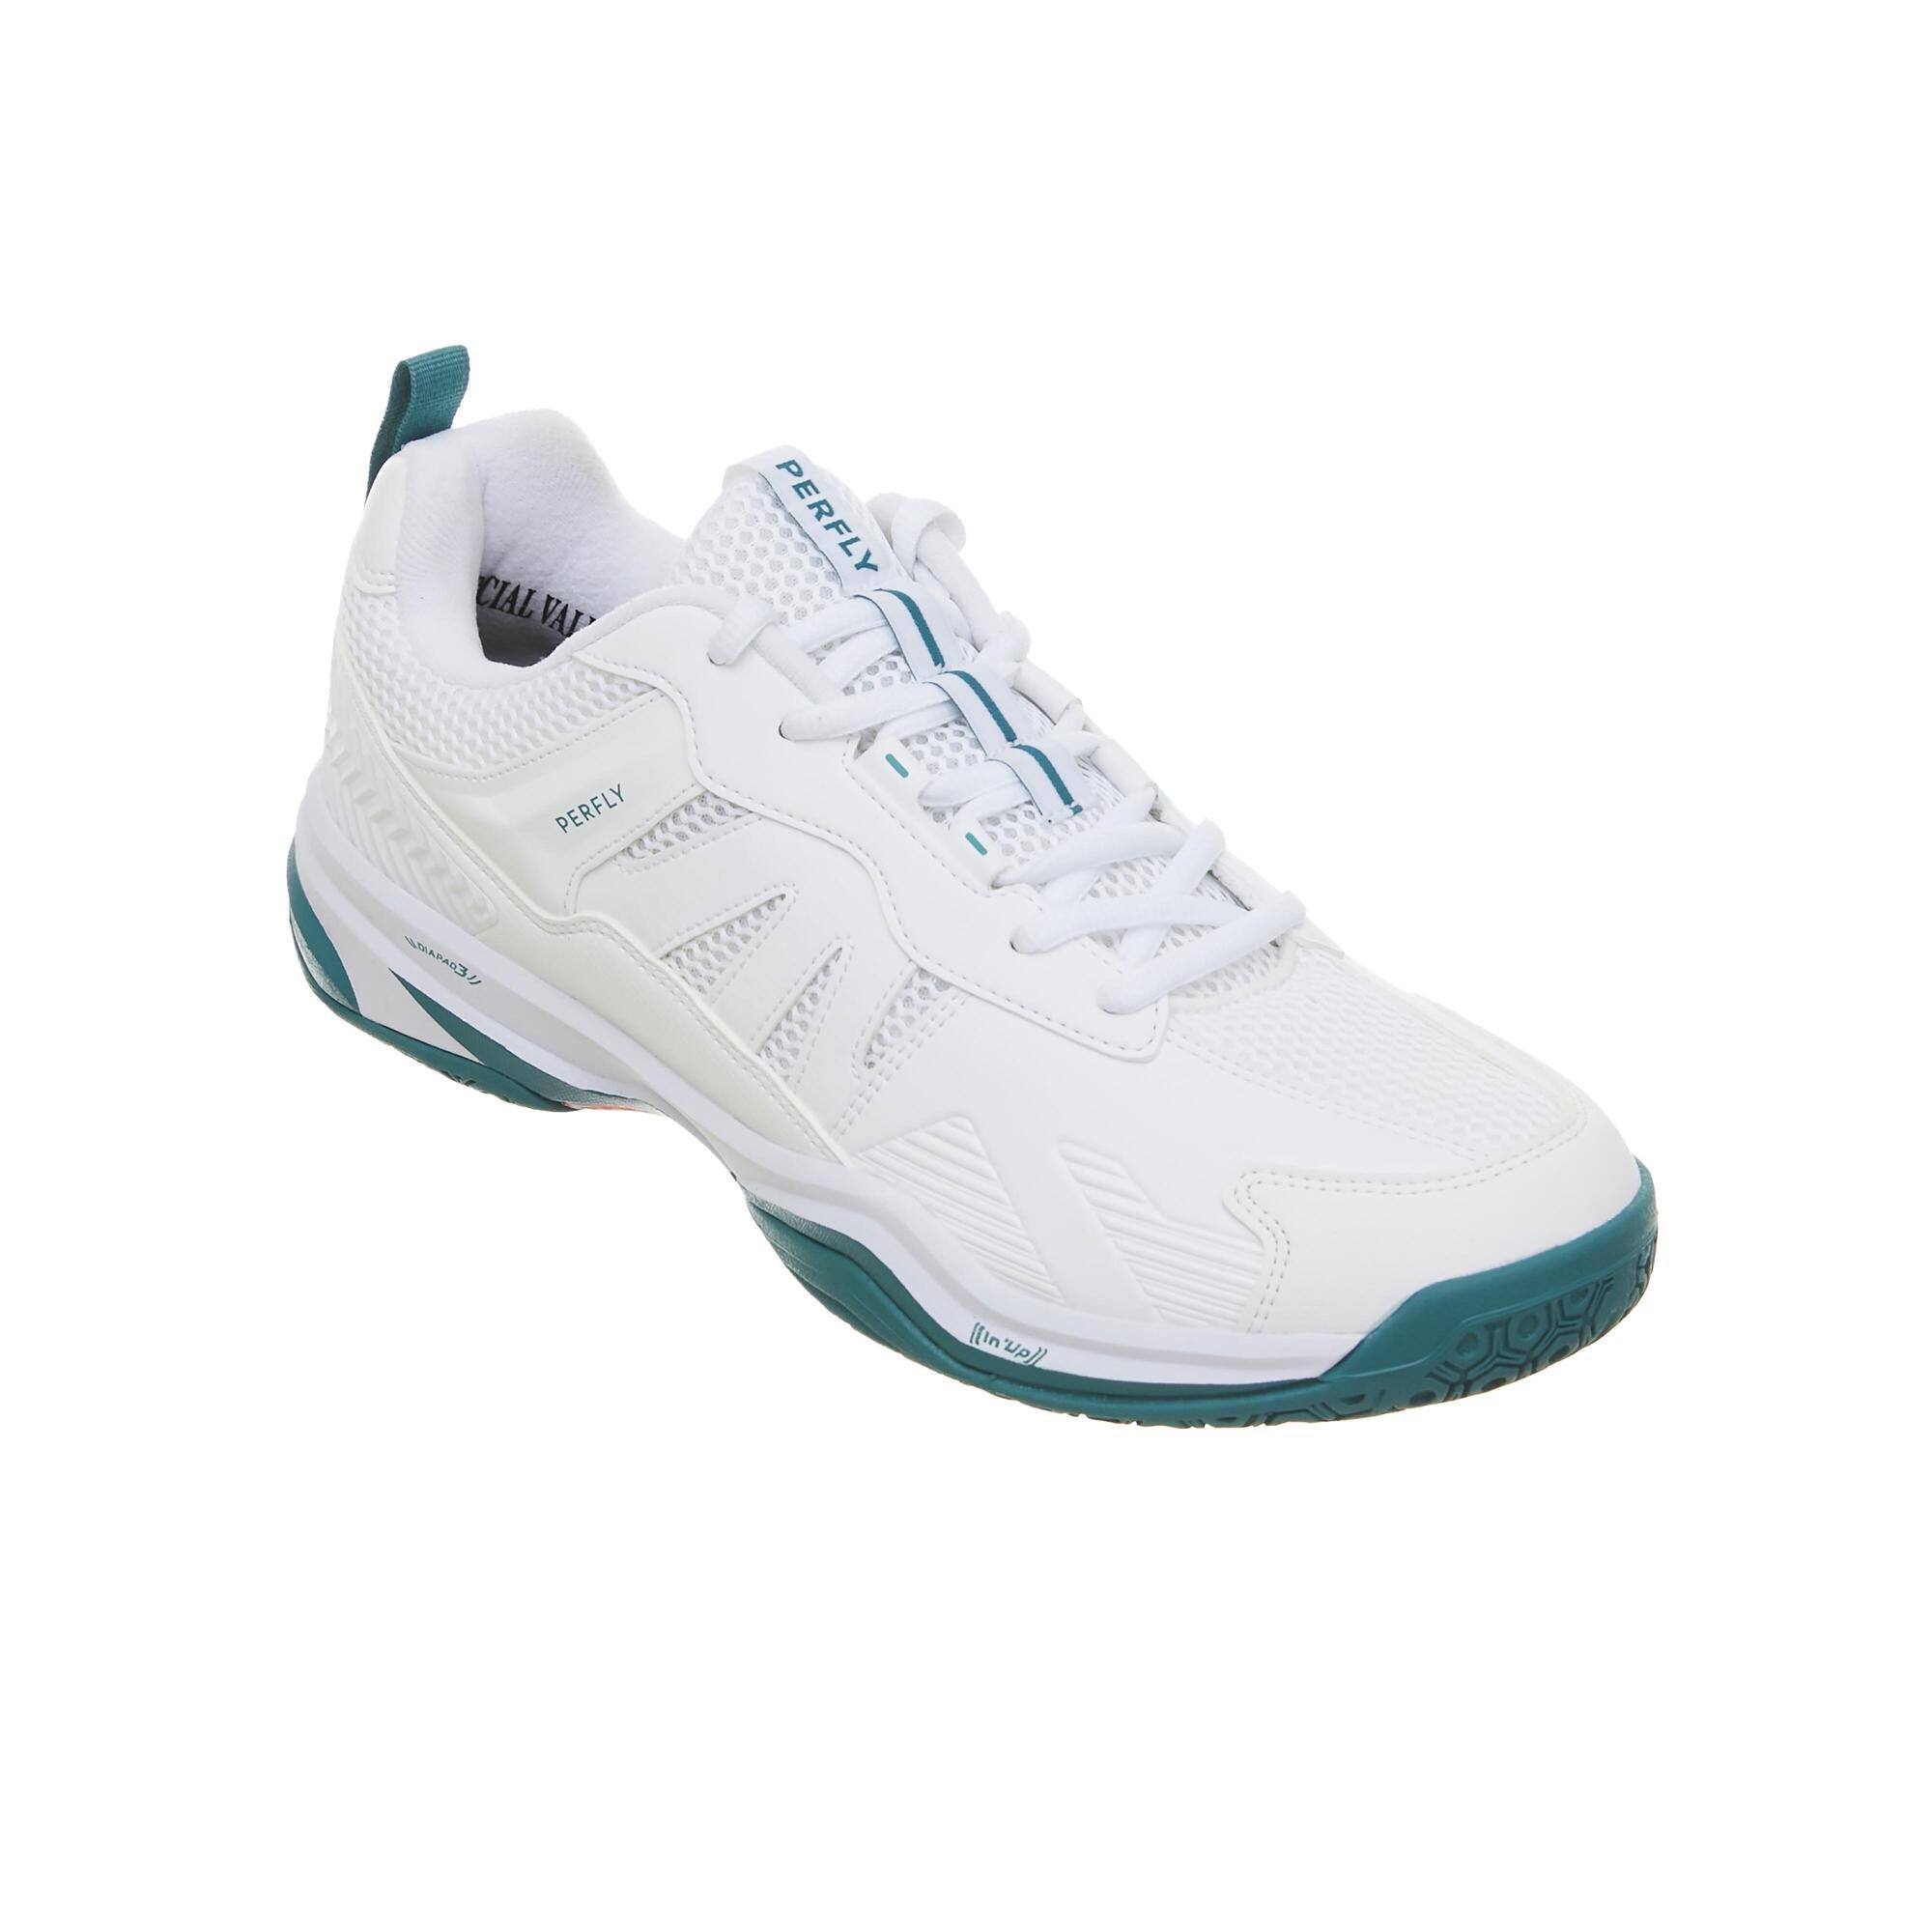 Спортивные кроссовки Decathlon Badminton Shoes Perform 590 Perfly, белый